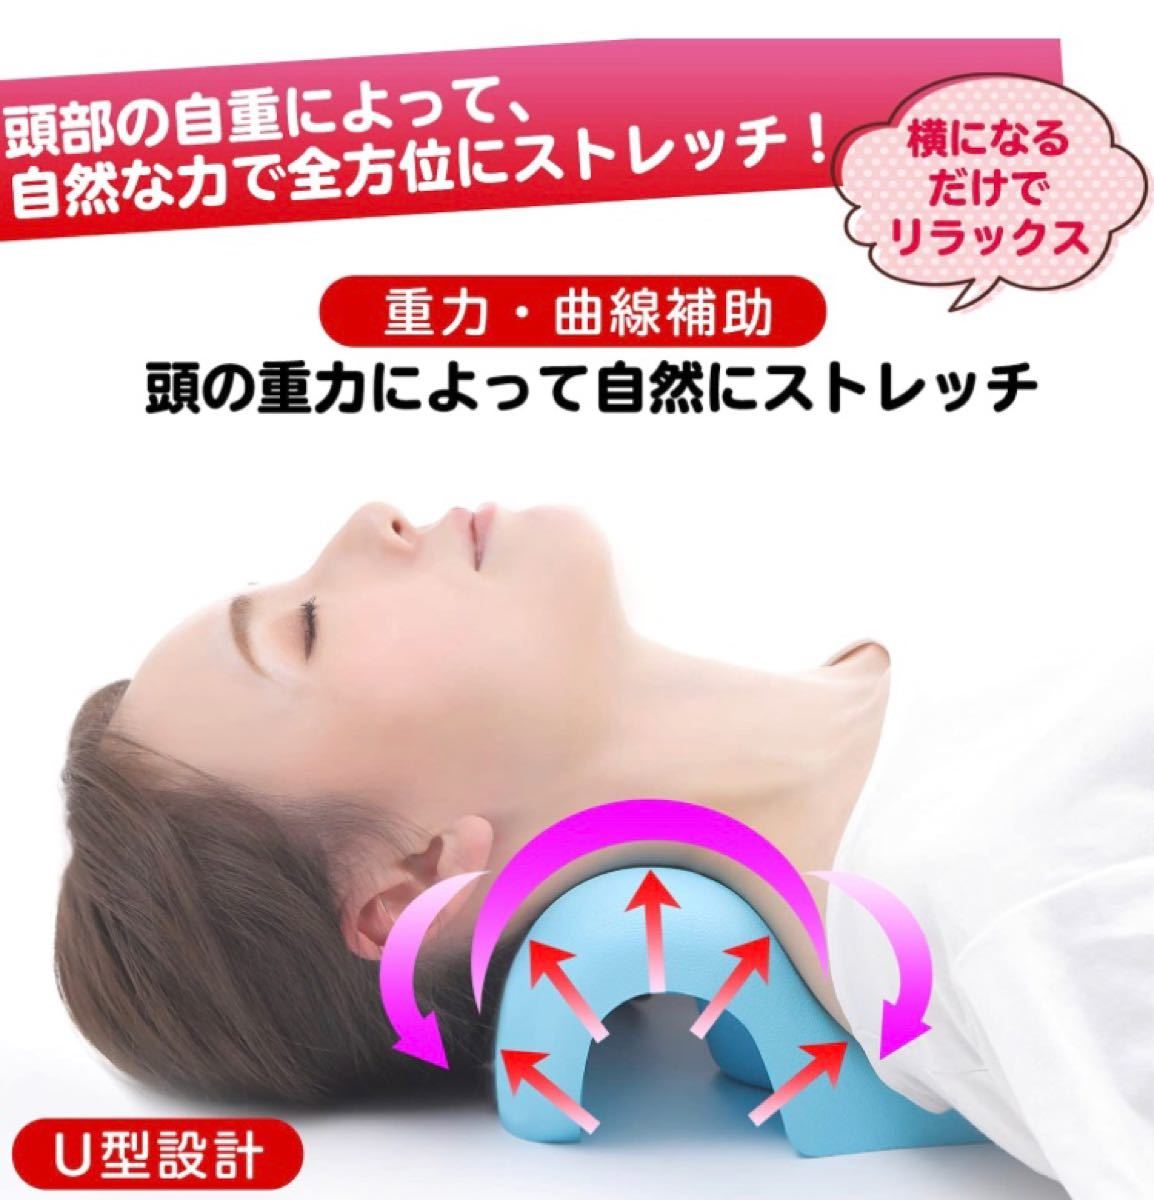 [整体師監修] 首 マッサージ 枕 首こり 肩 リラックス 首伸ばす枕